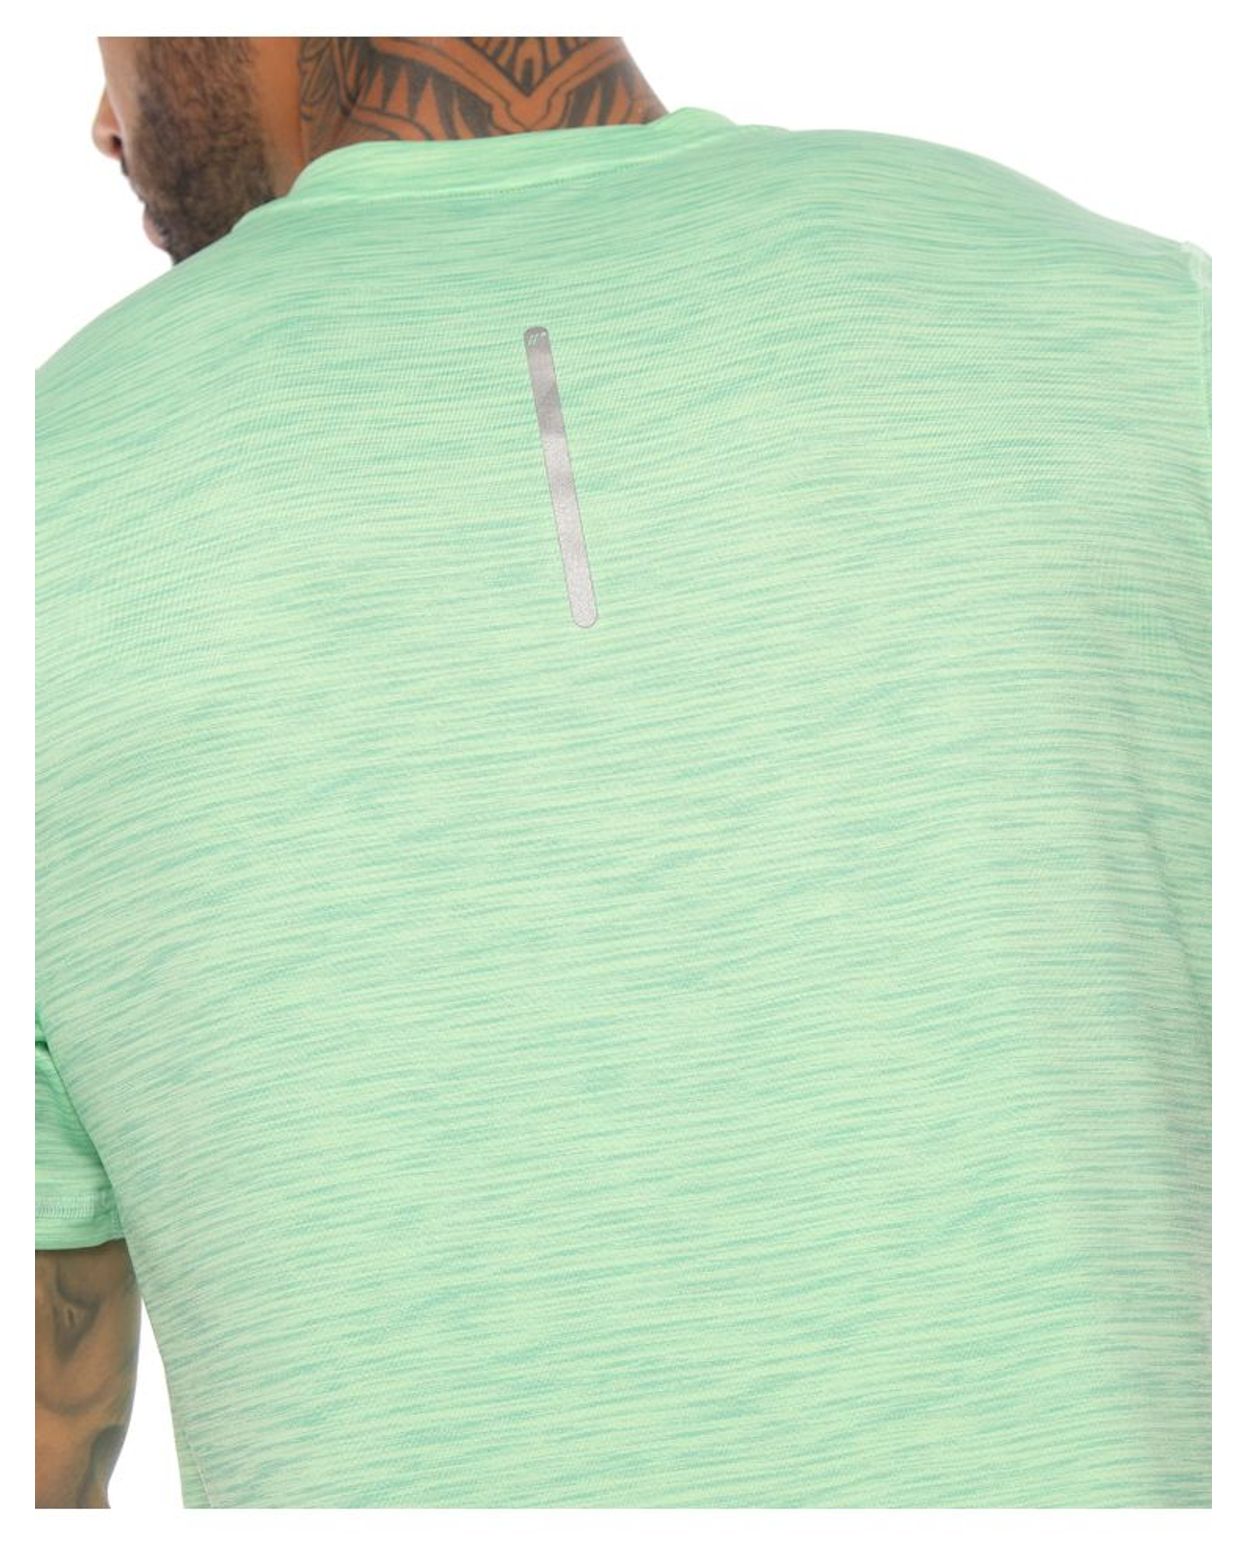 Camiseta Deportiva Verde para hombre parte trasera con reflectivo